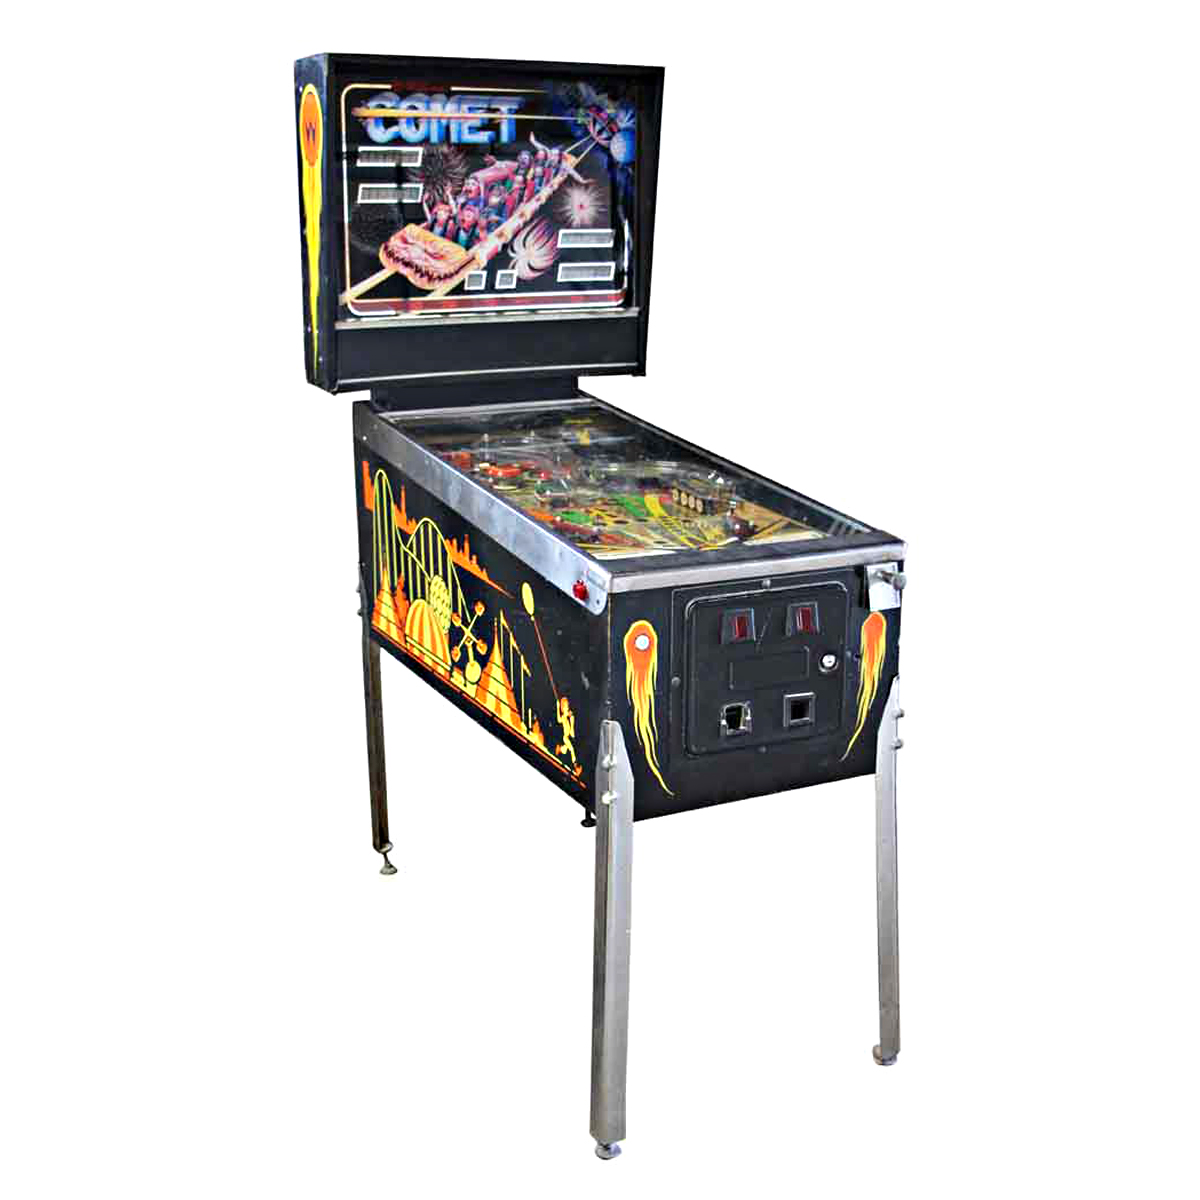 Comet Pinball Machine - Dirty Harry Pinball Machine